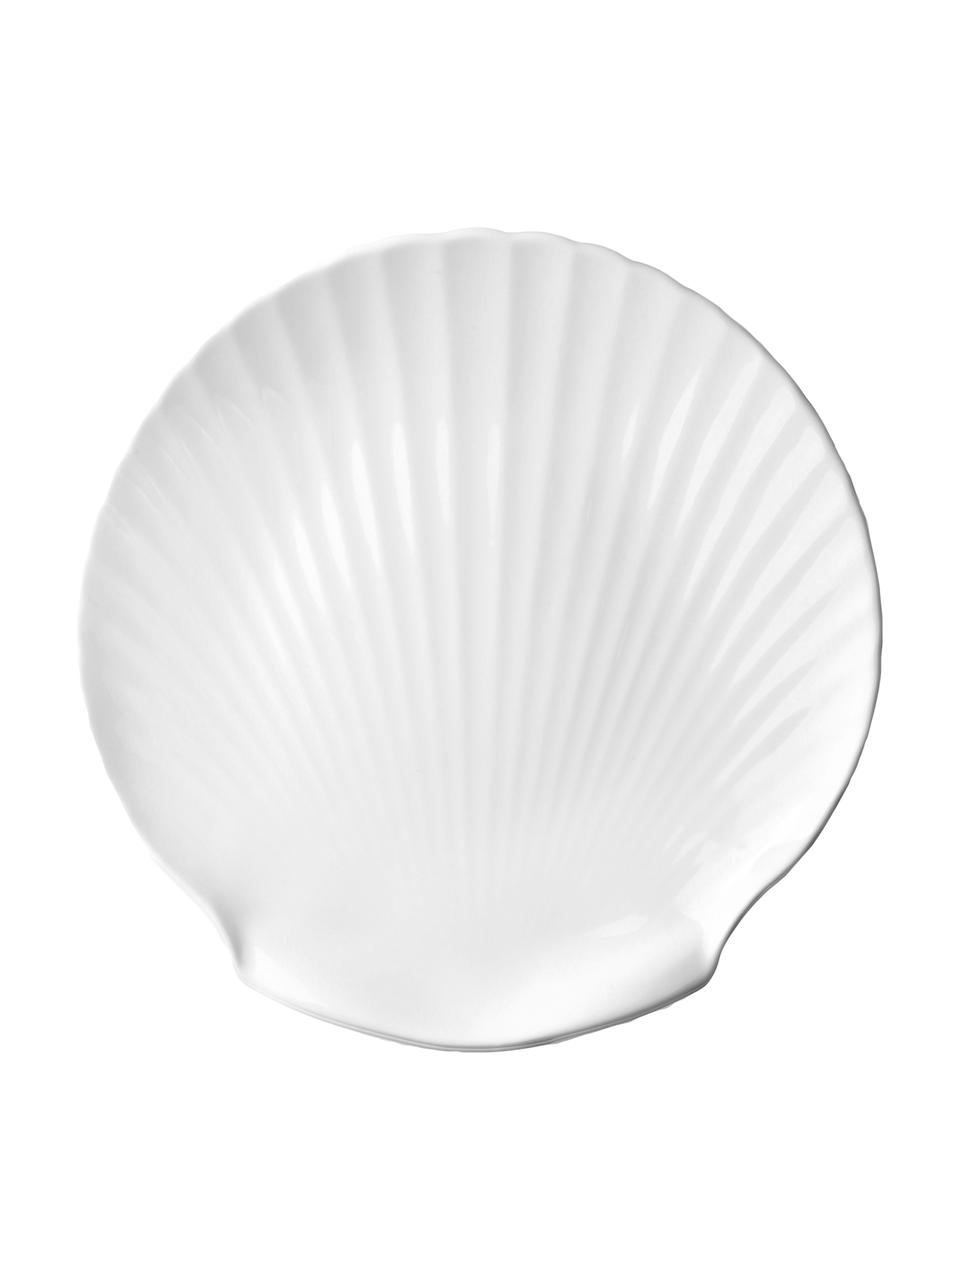 Fine Bone China serveerplateau Shell, Ø 27 cm, Beenderporselein (porselein)
Fine Bone China is een zacht porselein, dat zich vooral onderscheidt door zijn briljante, doorschijnende glans., Wit, Ø 27 cm